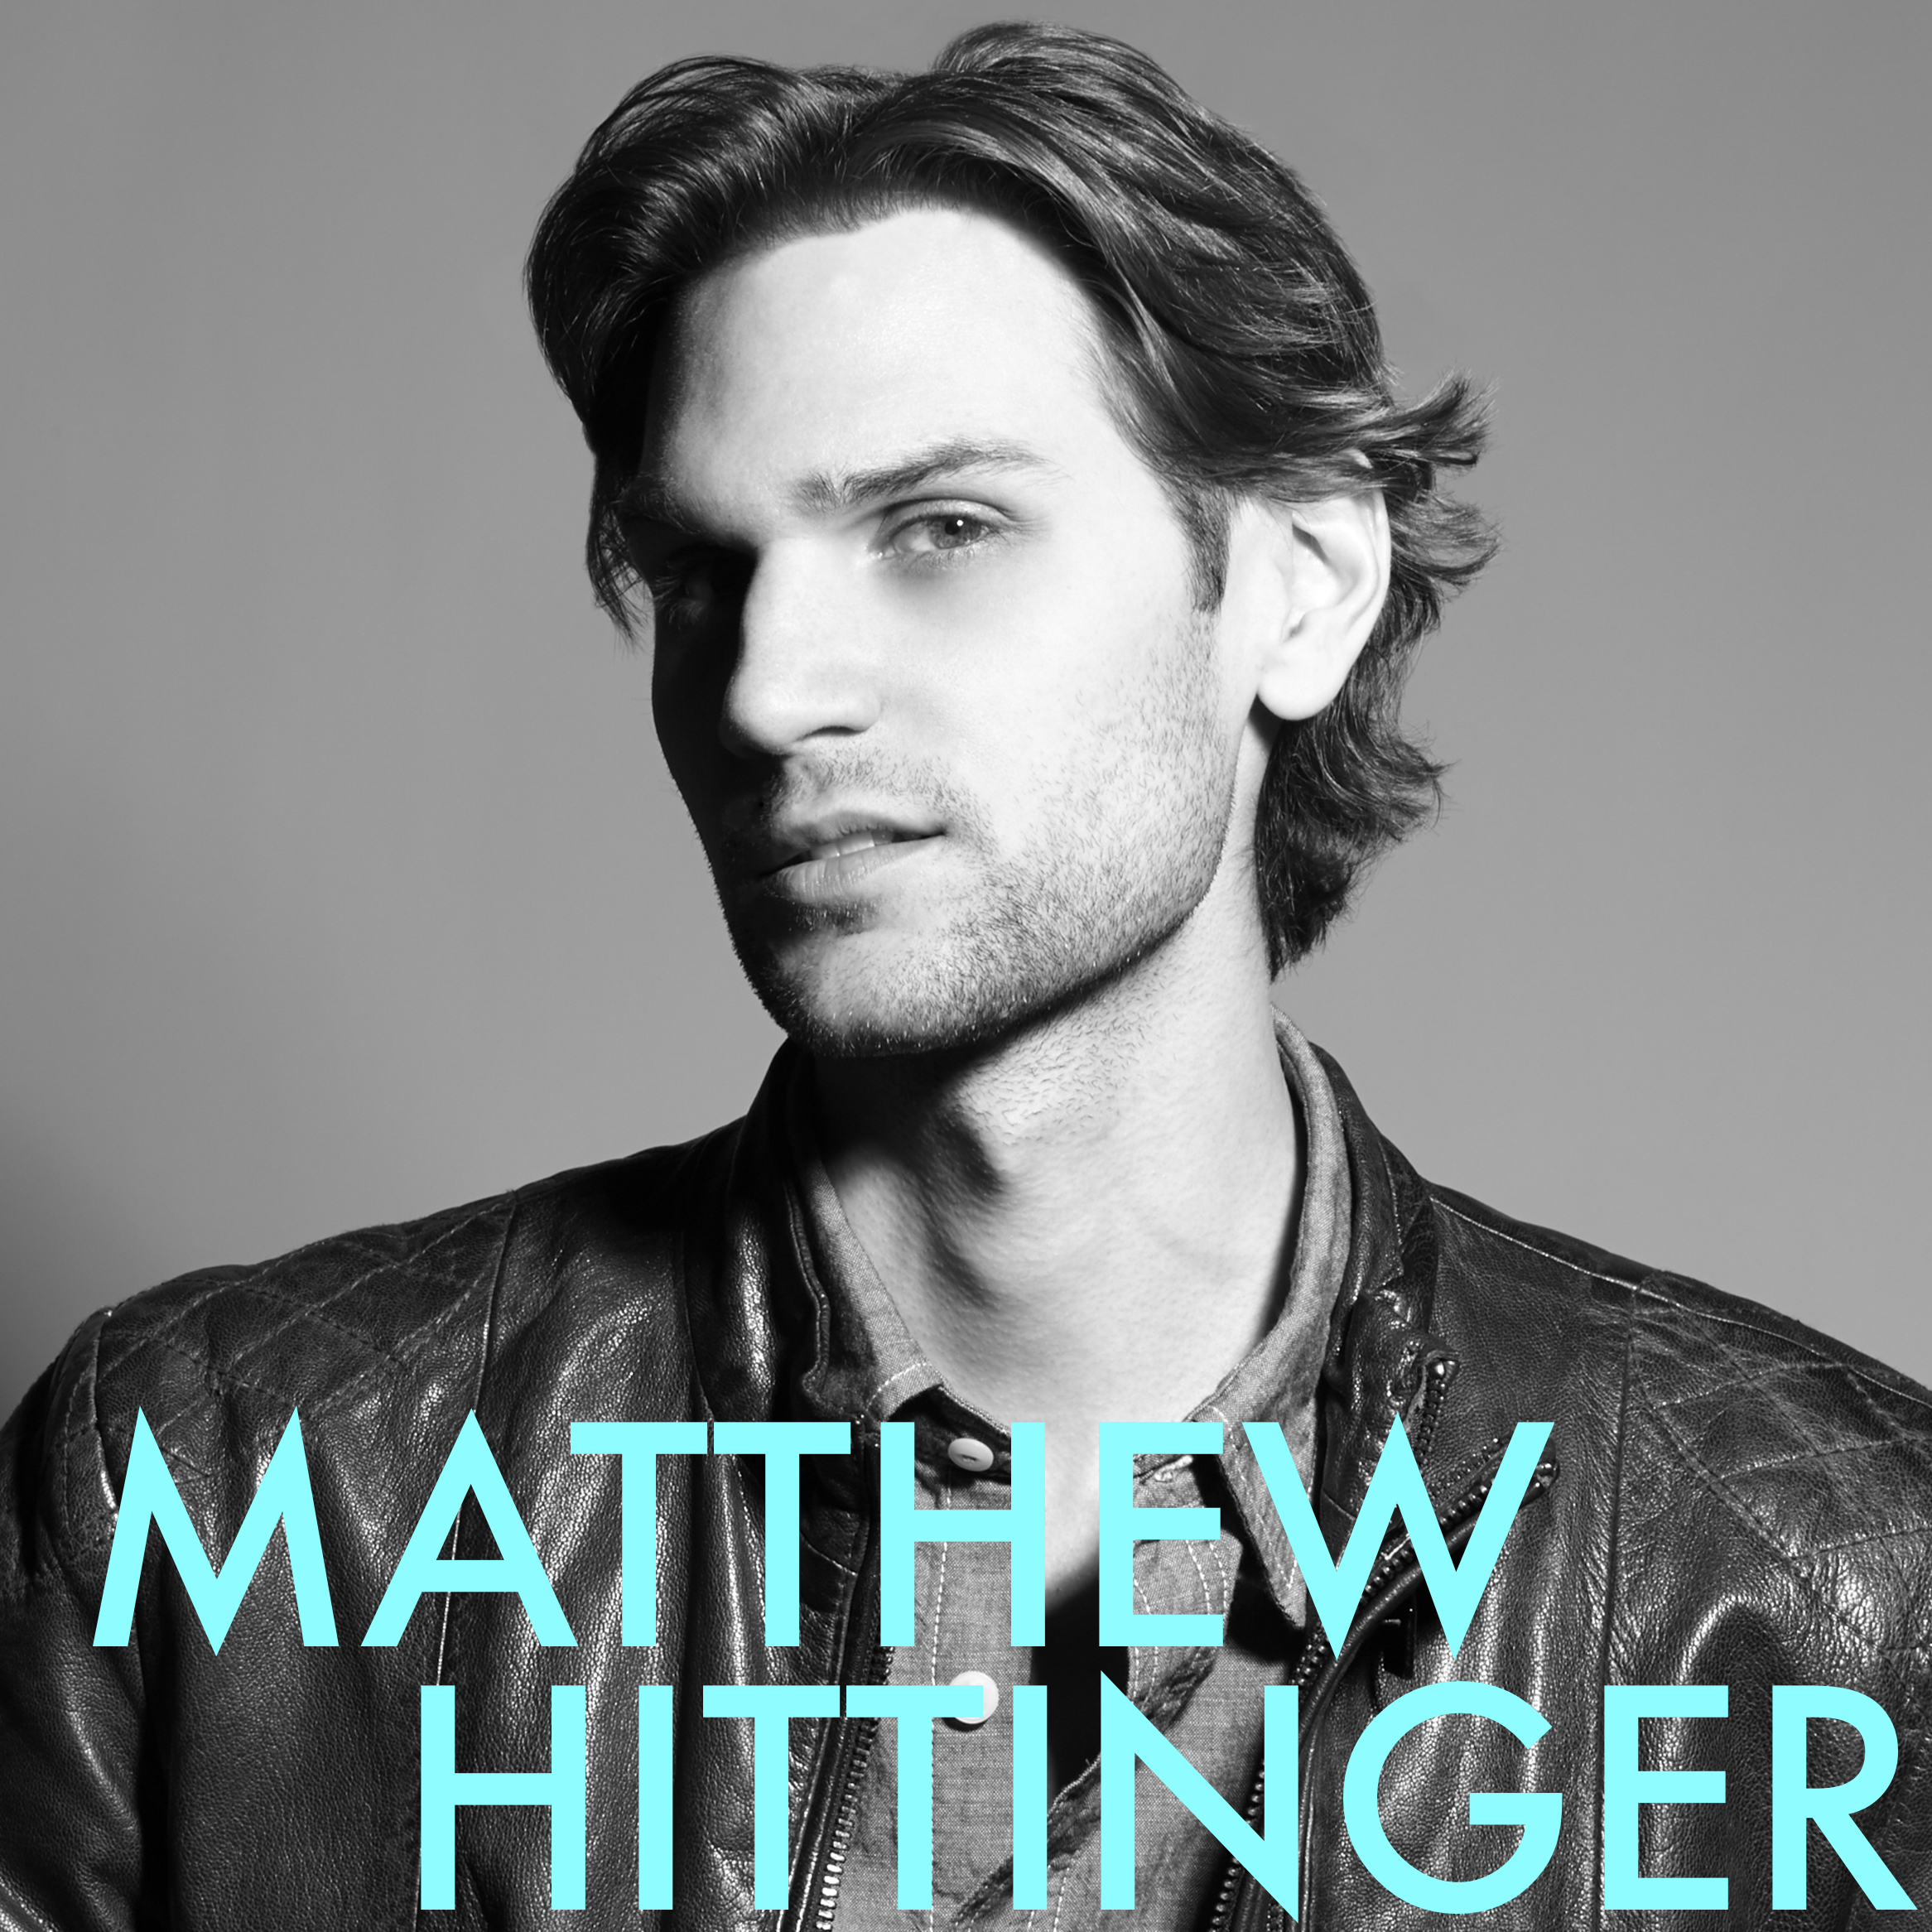 Matthew Hittinger headshot.jpg